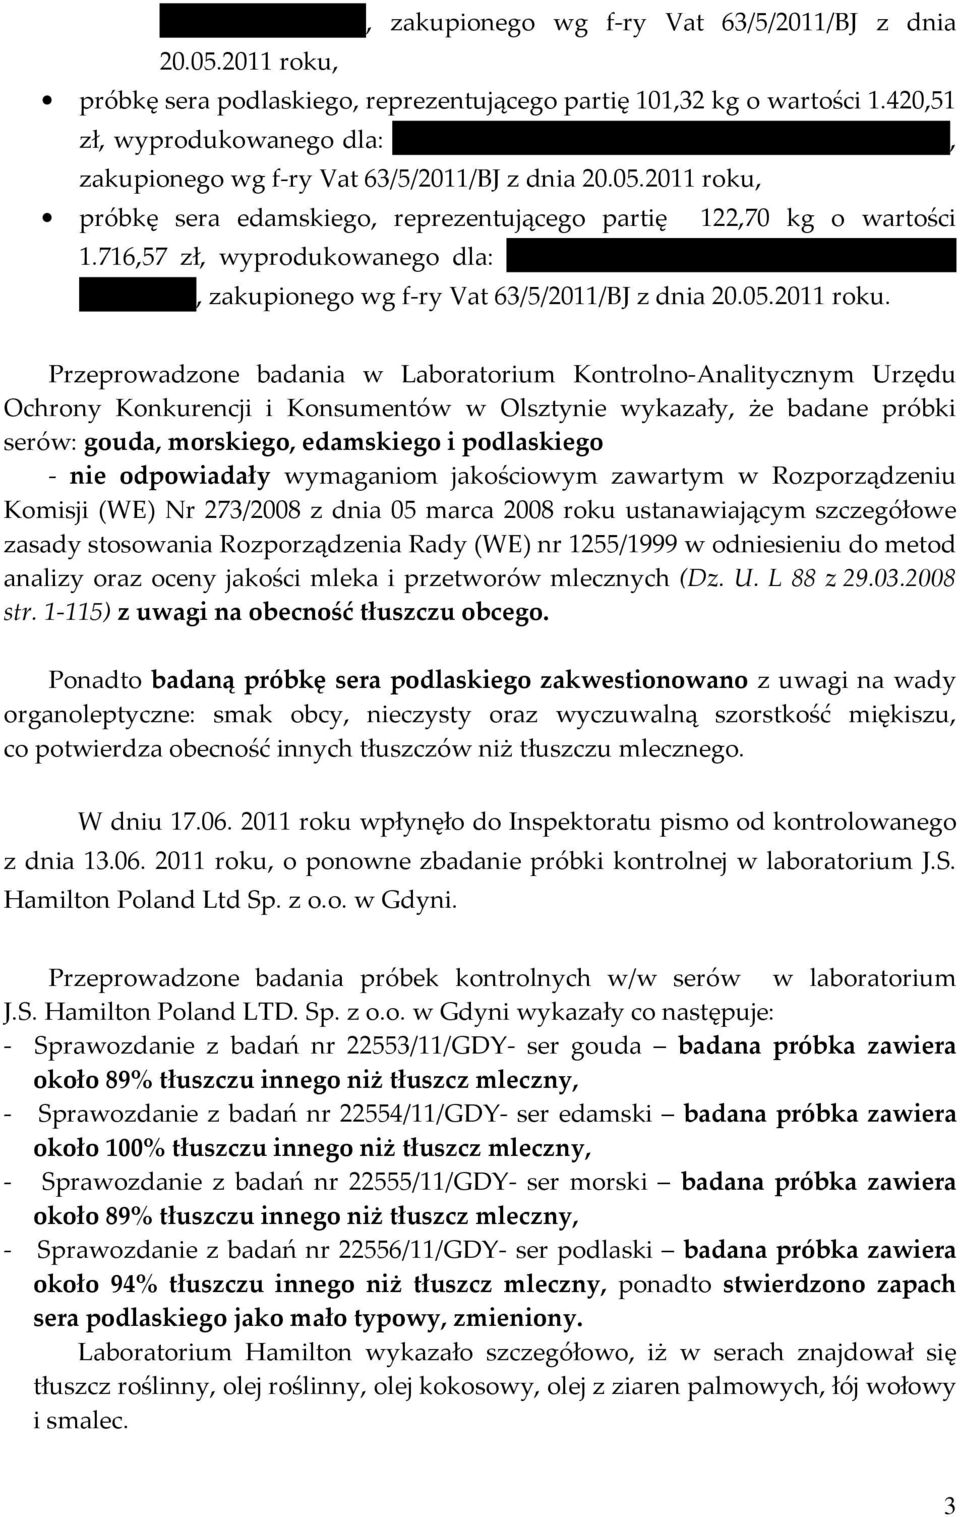 716,57 zł, wyprodukowanego dla: Dairy Broker ul. Czerska 18/46, 00-732 Warszawa, zakupionego wg f-ry Vat 63/5/2011/BJ z dnia 20.05.2011 roku.